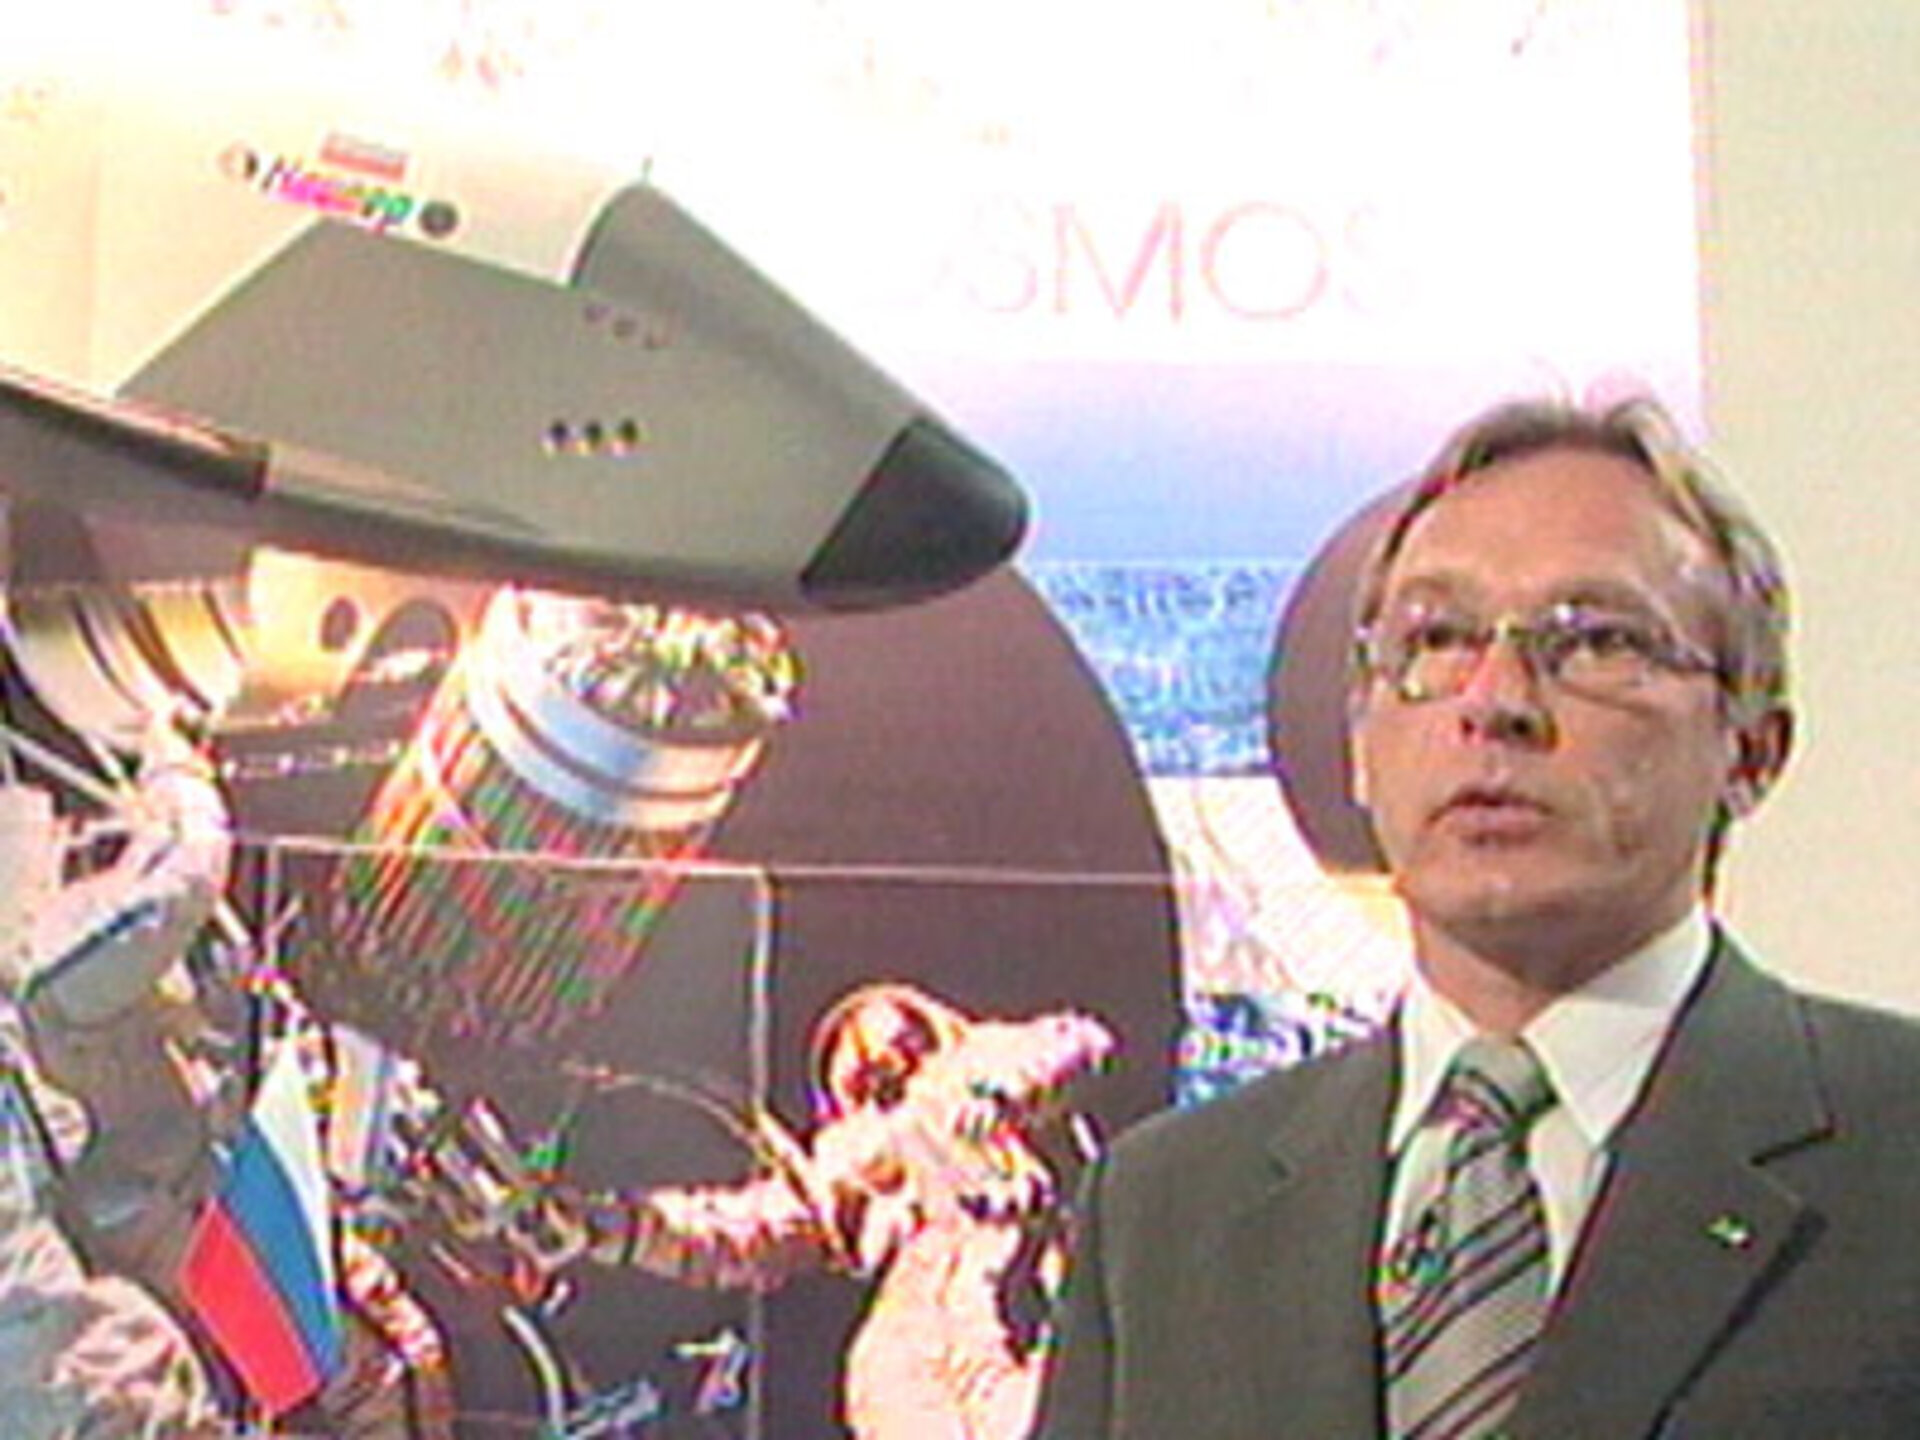 Vladimir Daneev, engineer at RKK Energuya, main industrial company